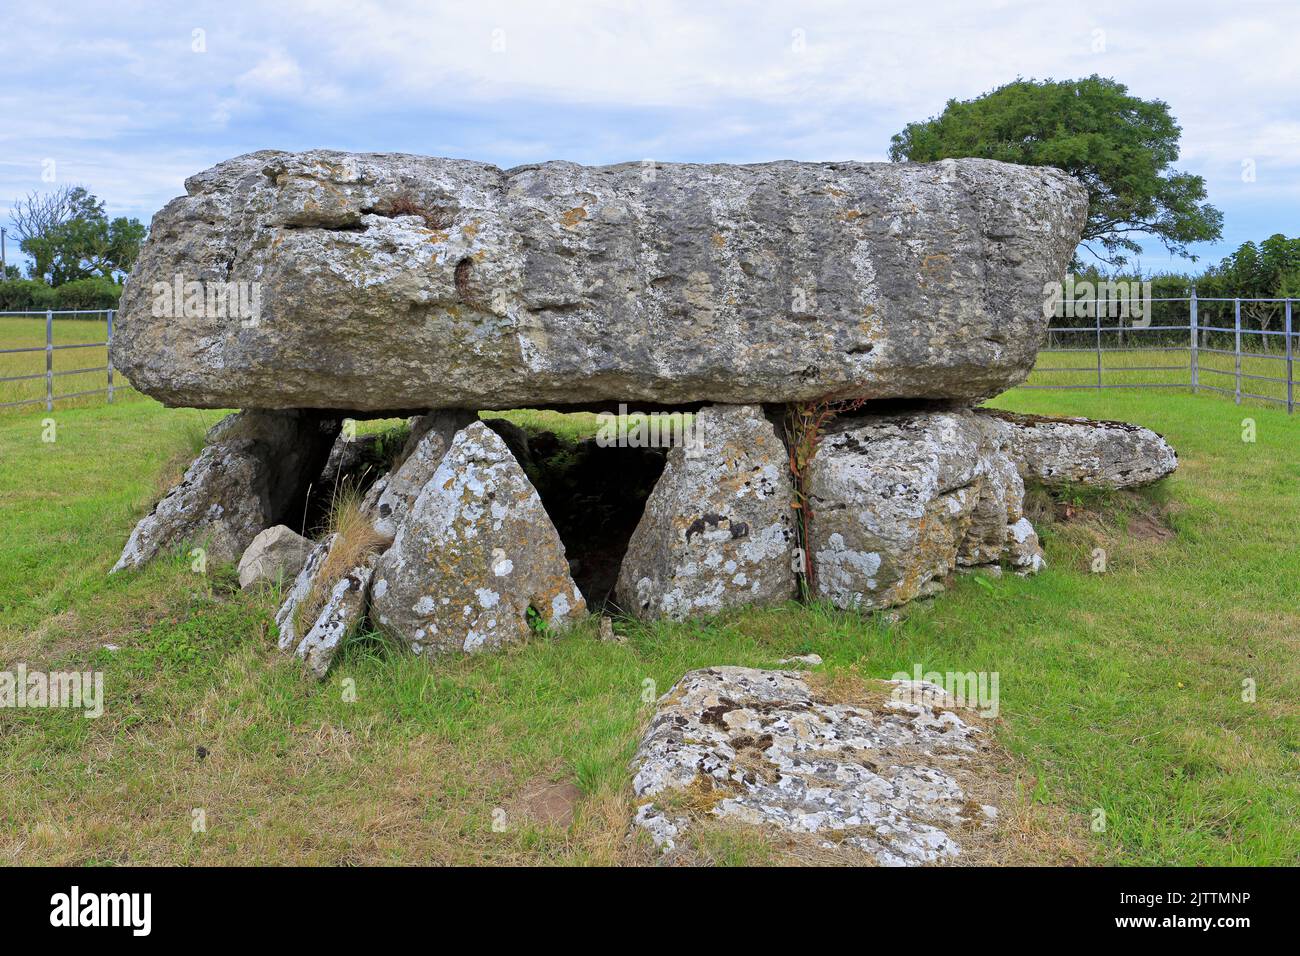 Chambre de sépulture néolithique de Lligwy près de Moelfre, île d'Anglesey, Ynys mon, pays de Galles du Nord, Royaume-Uni. Banque D'Images